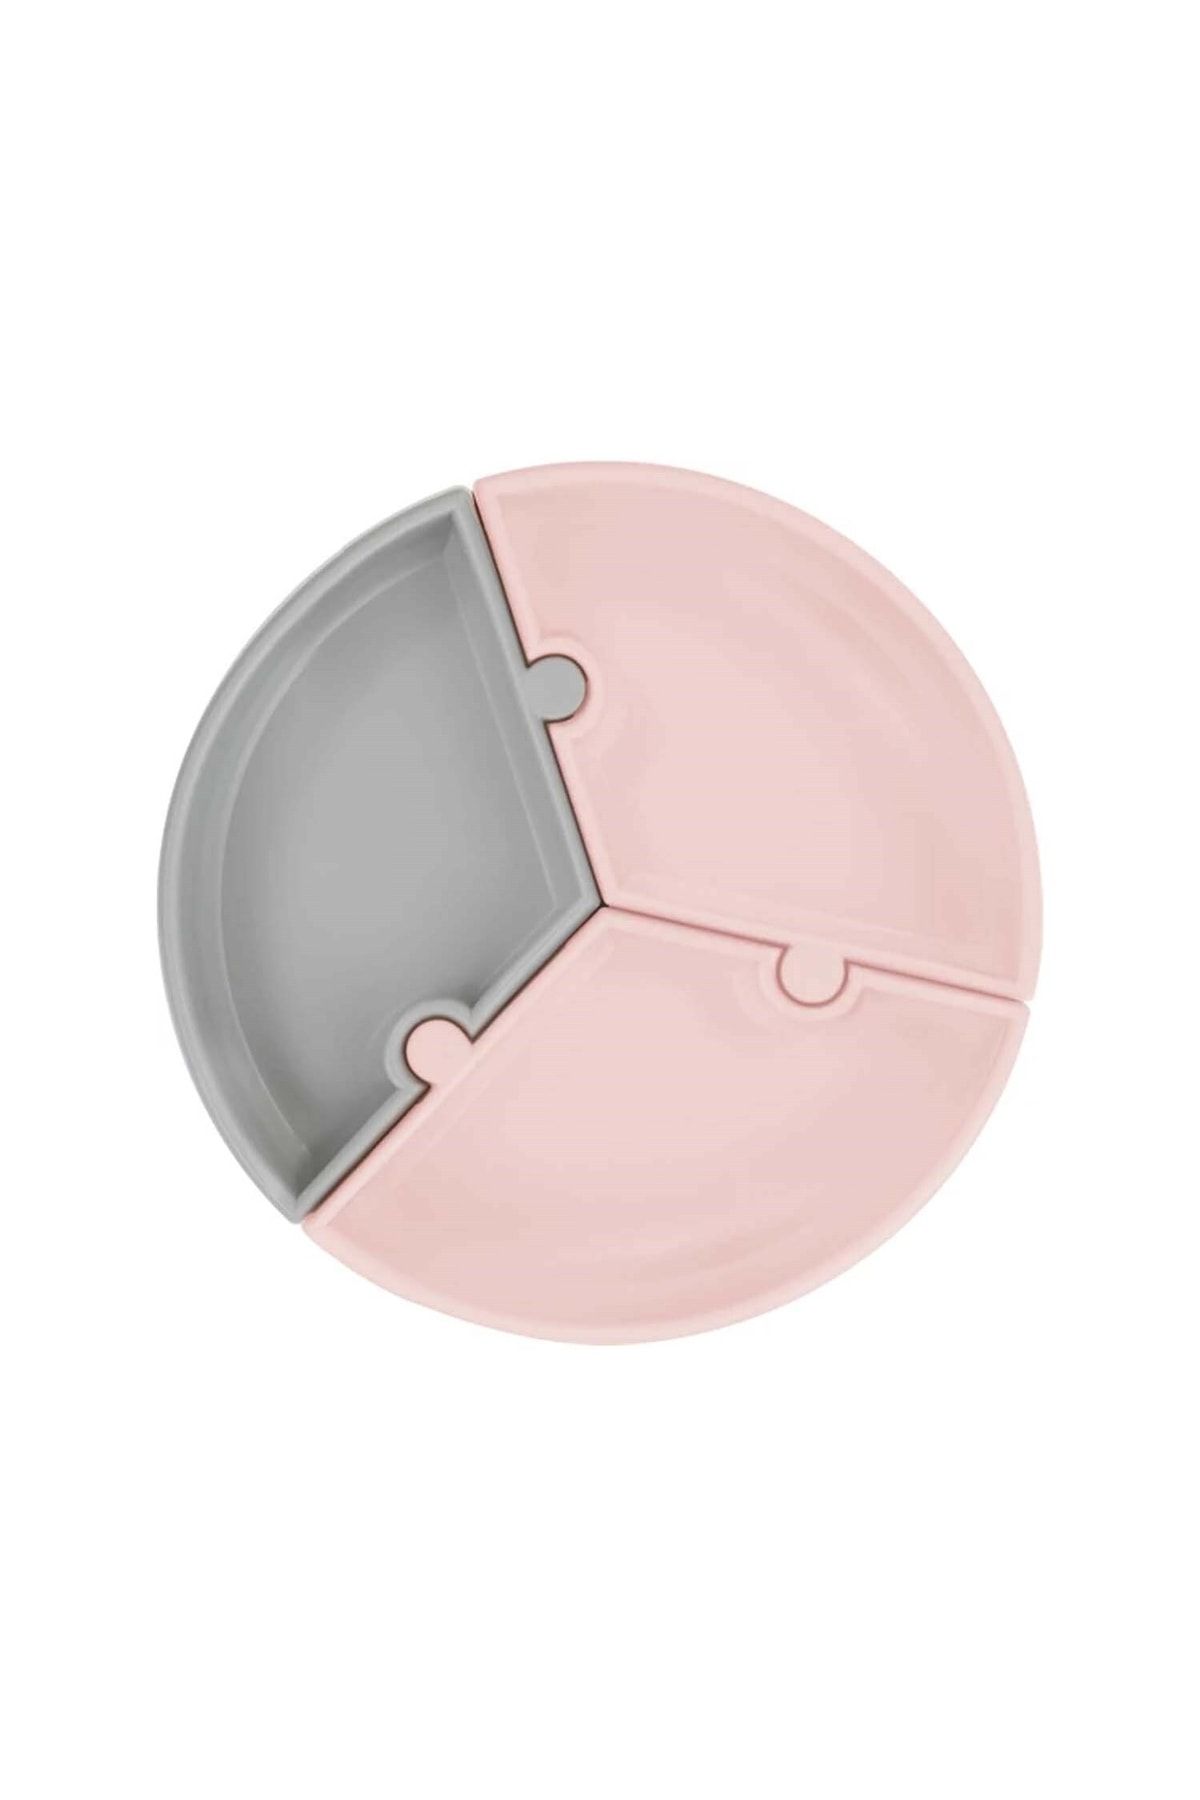 OiOi Puzzle Vakum Tabanlı Silikon Tabak Pinky Pink / Powder Grey